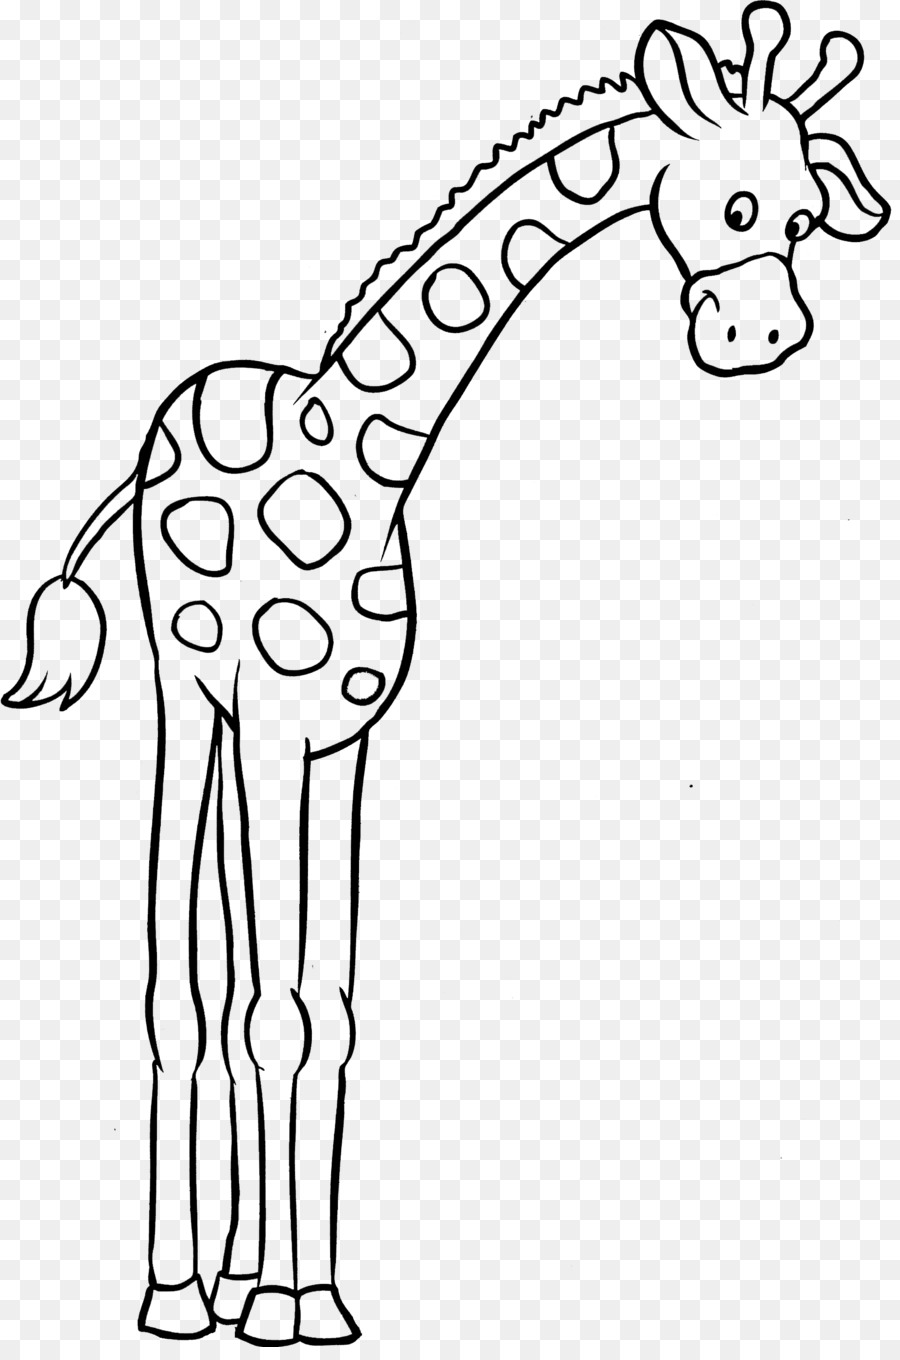 Libro da colorare Bambino Clip art - giraffa